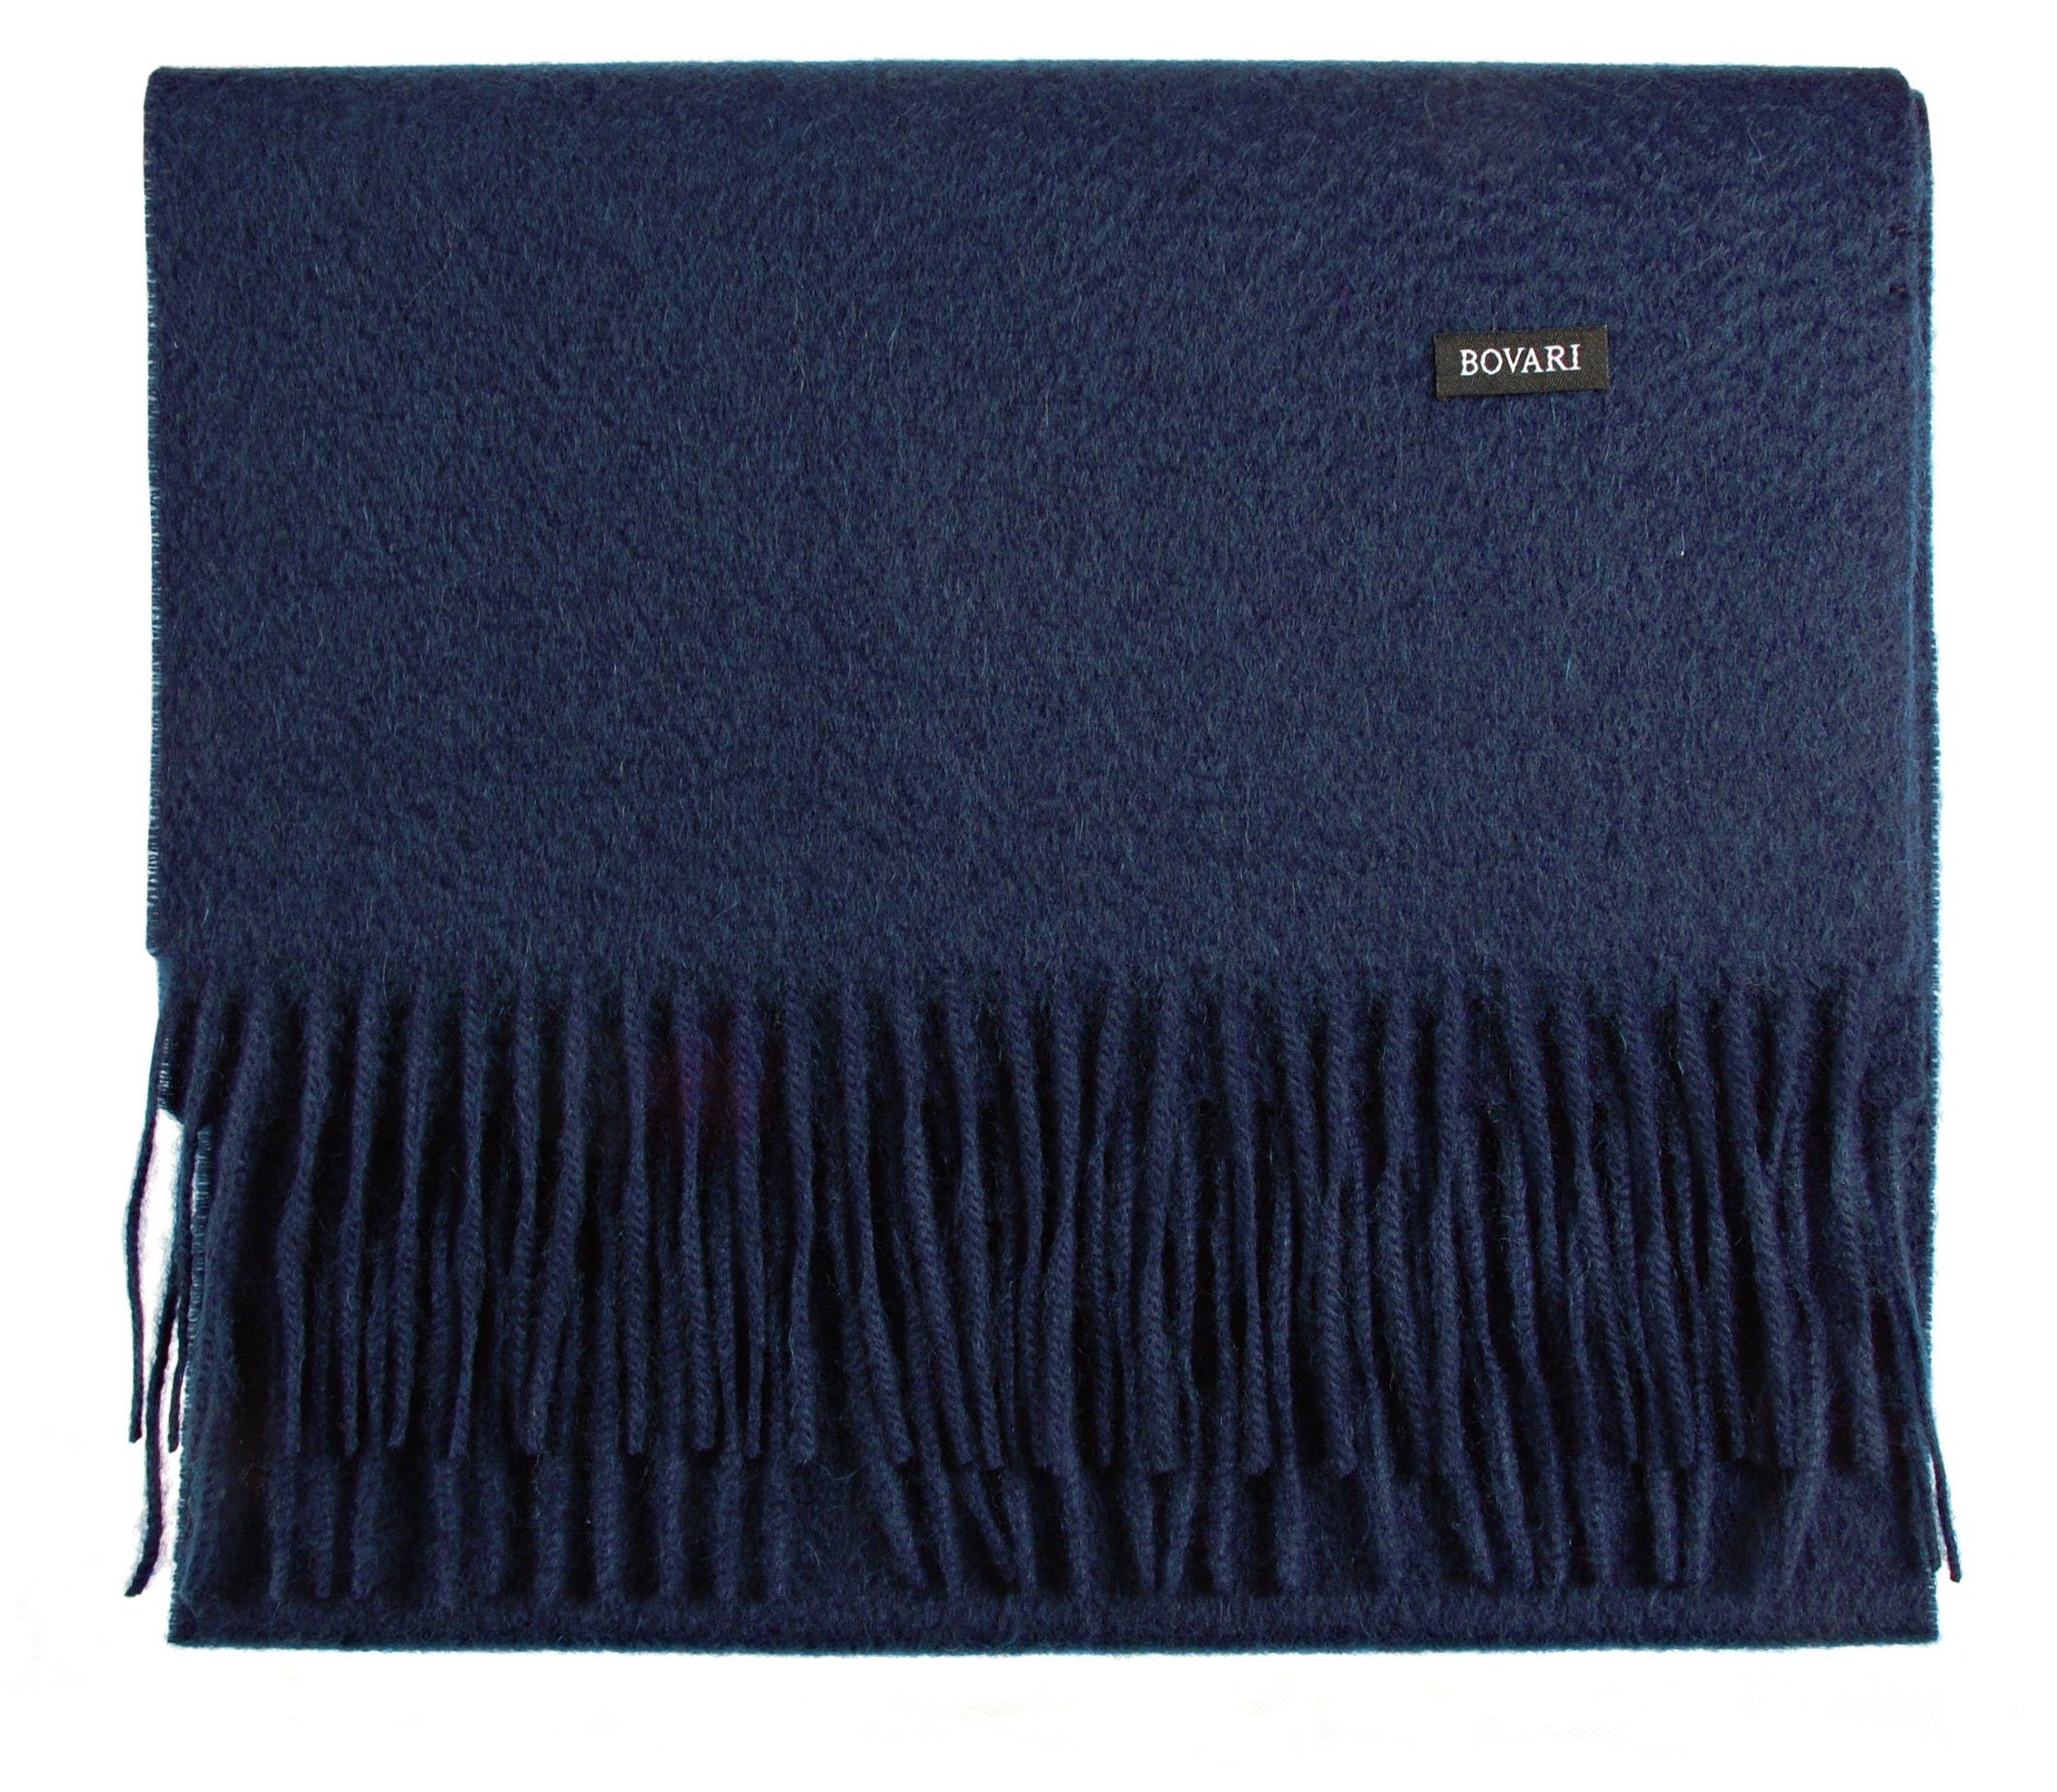 Bovari Kaschmirschal Kaschmir Schal Damen – 100% Kaschmir/Cashmere – Premium Qualität, 180 x 31 cm blau / navy blue